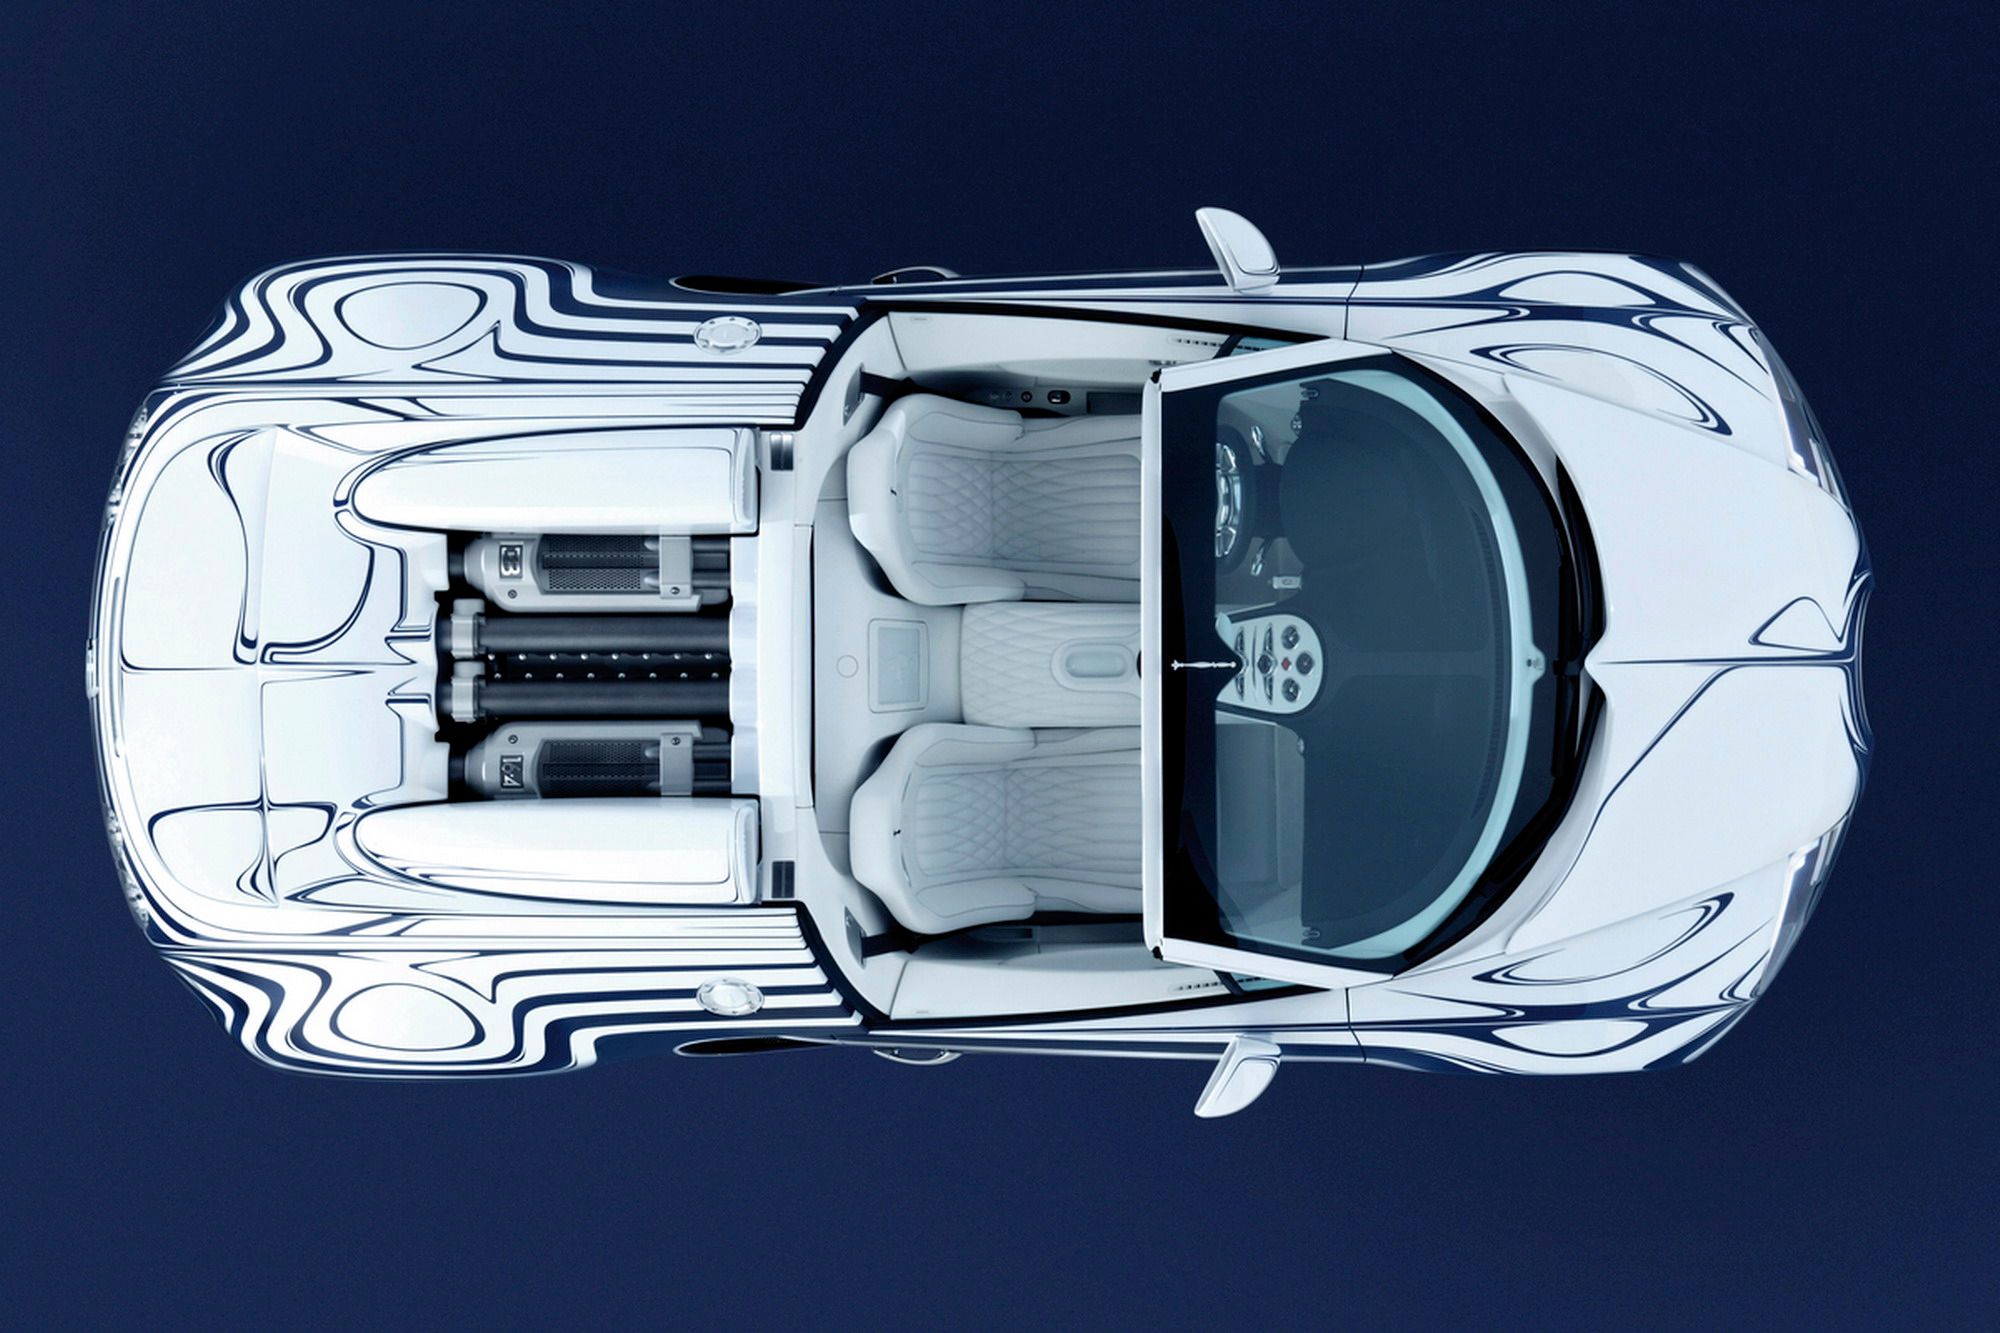 2011 Bugatti Veyron L'or Blanc 